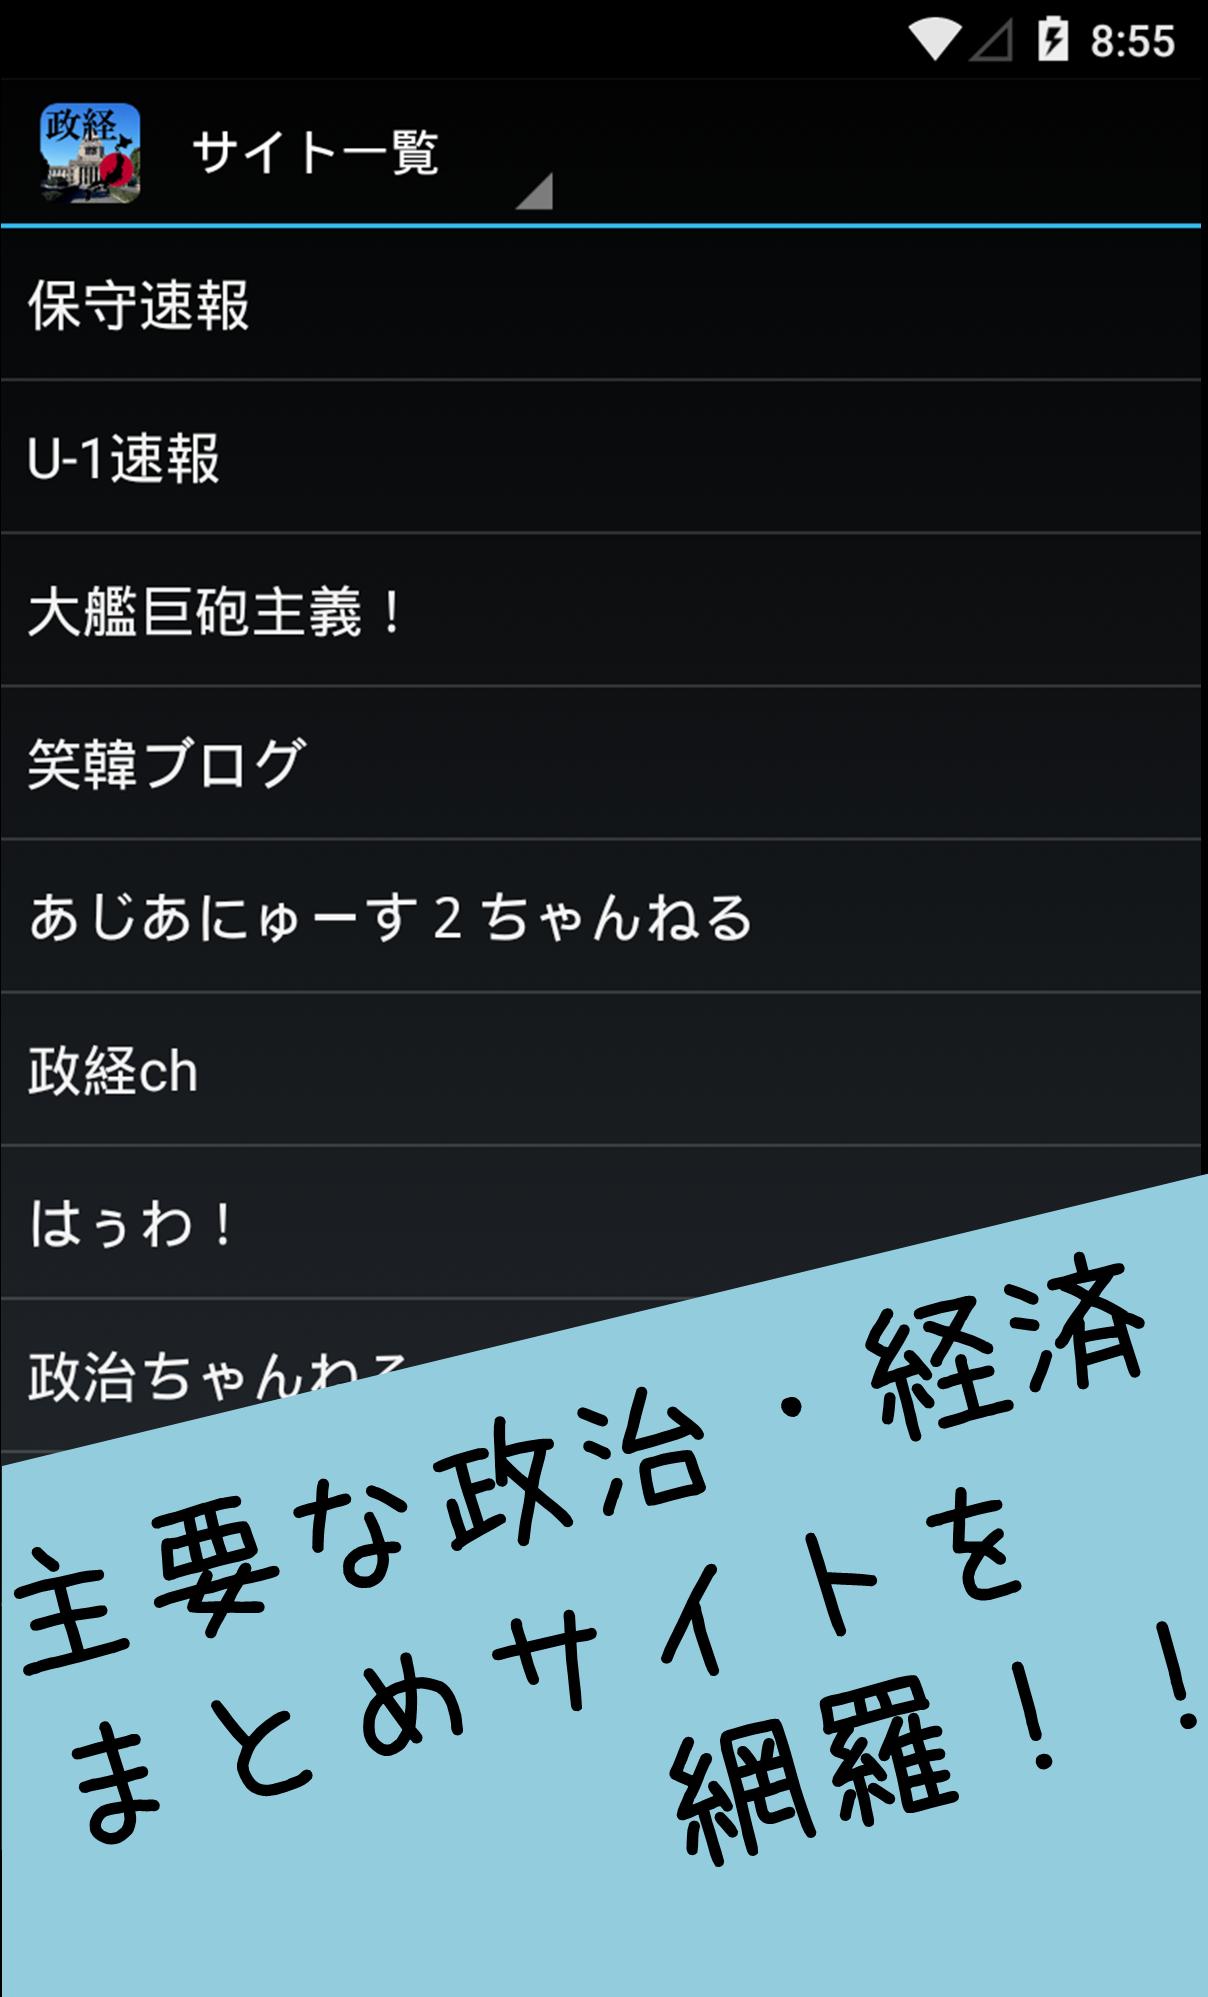 政経2chまとめリーダー For Android Apk Download